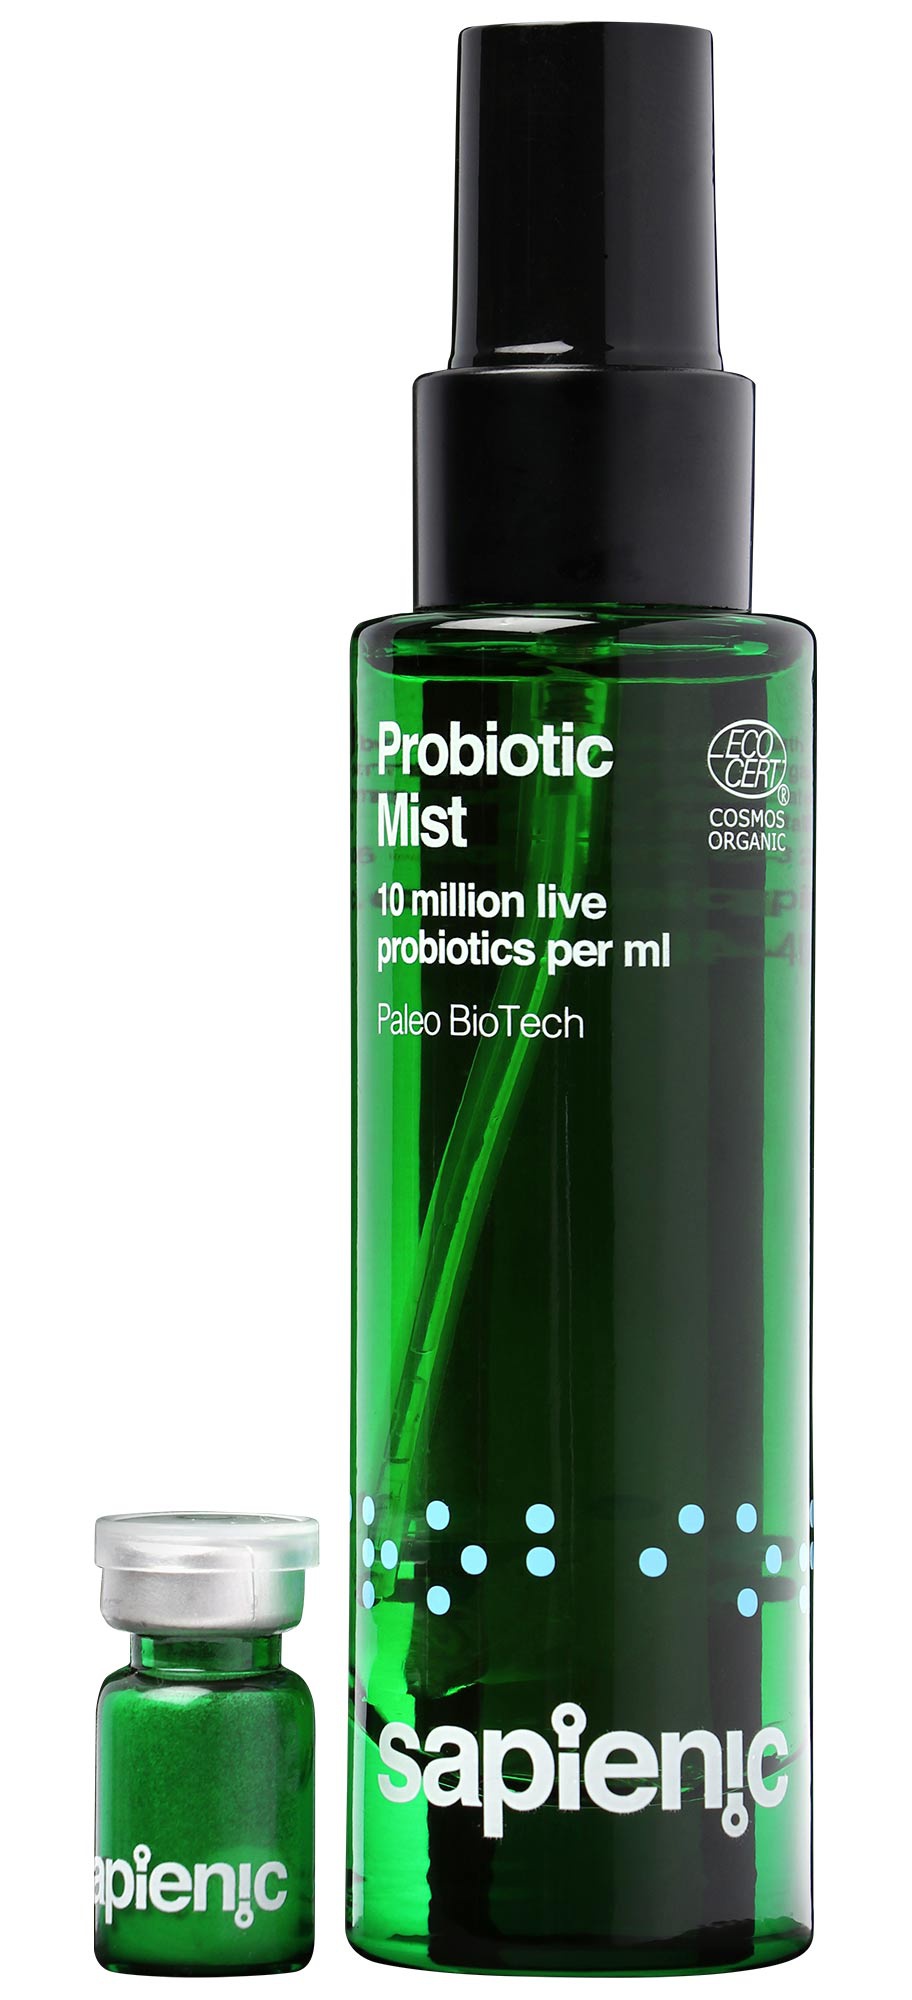 sapienic Probiotic Mist